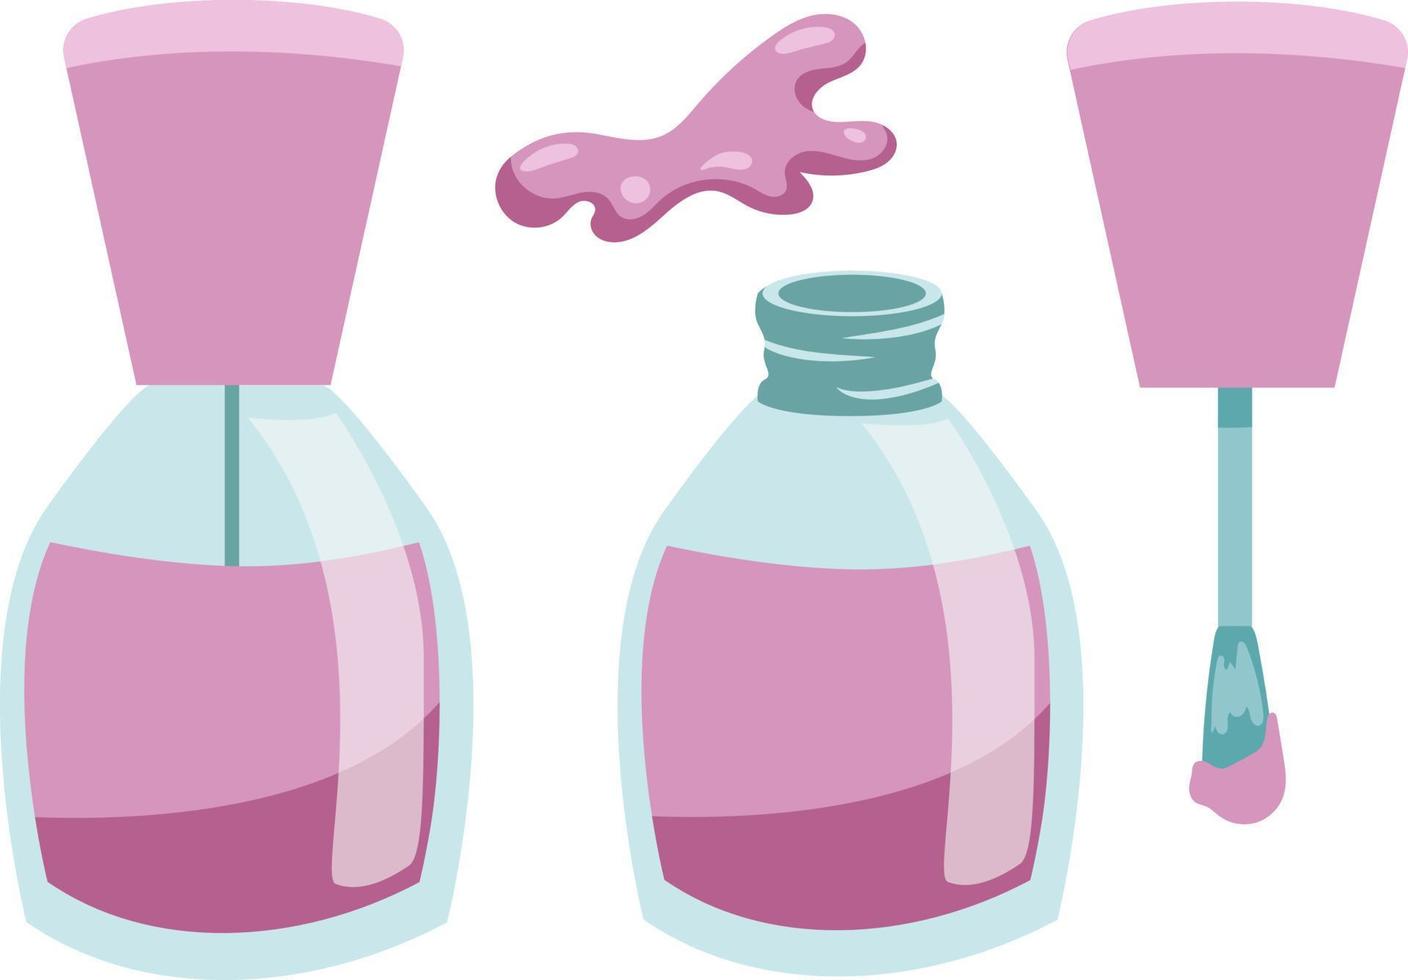 Manicure lilac purple nail polish set. Nail polish bottle and brush isolated on white background flat style vector